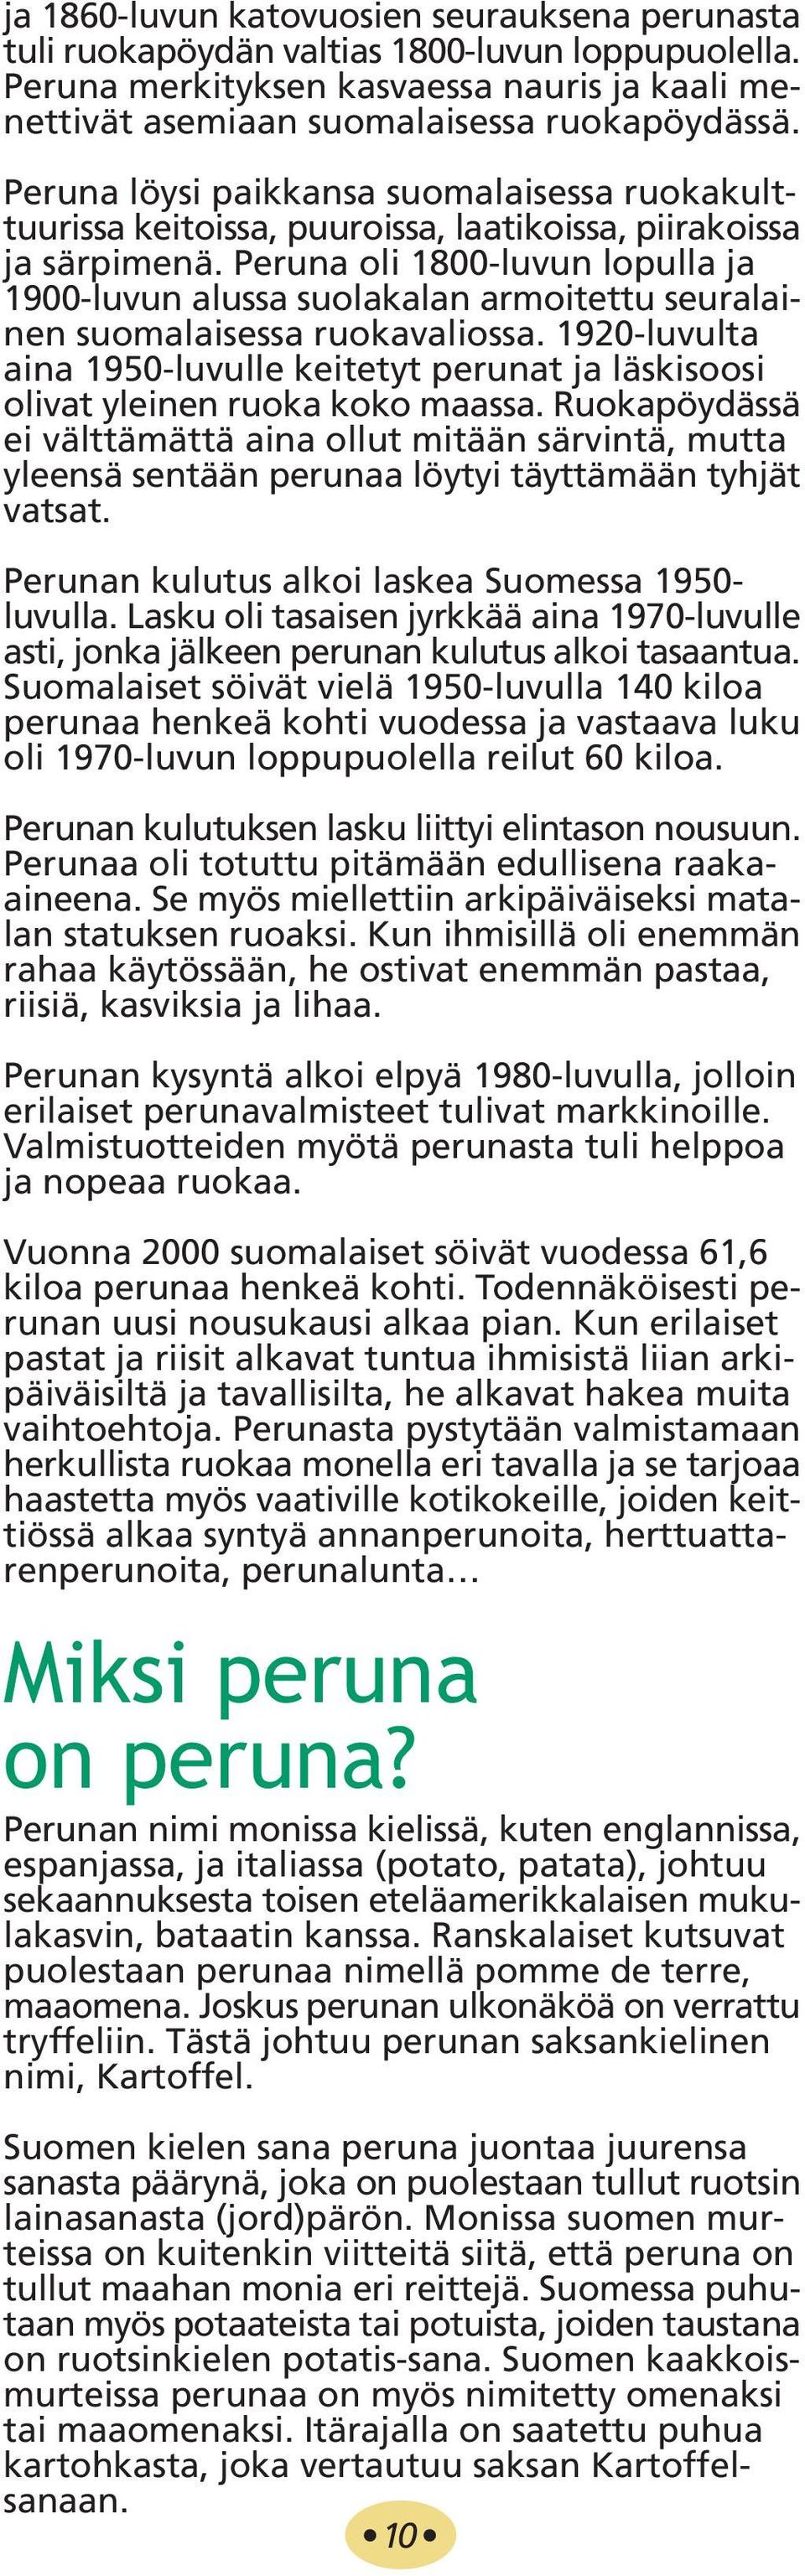 Peruna oli 1800-luvun lopulla ja 1900-luvun alussa suolakalan armoitettu seuralainen suomalaisessa ruokavaliossa.